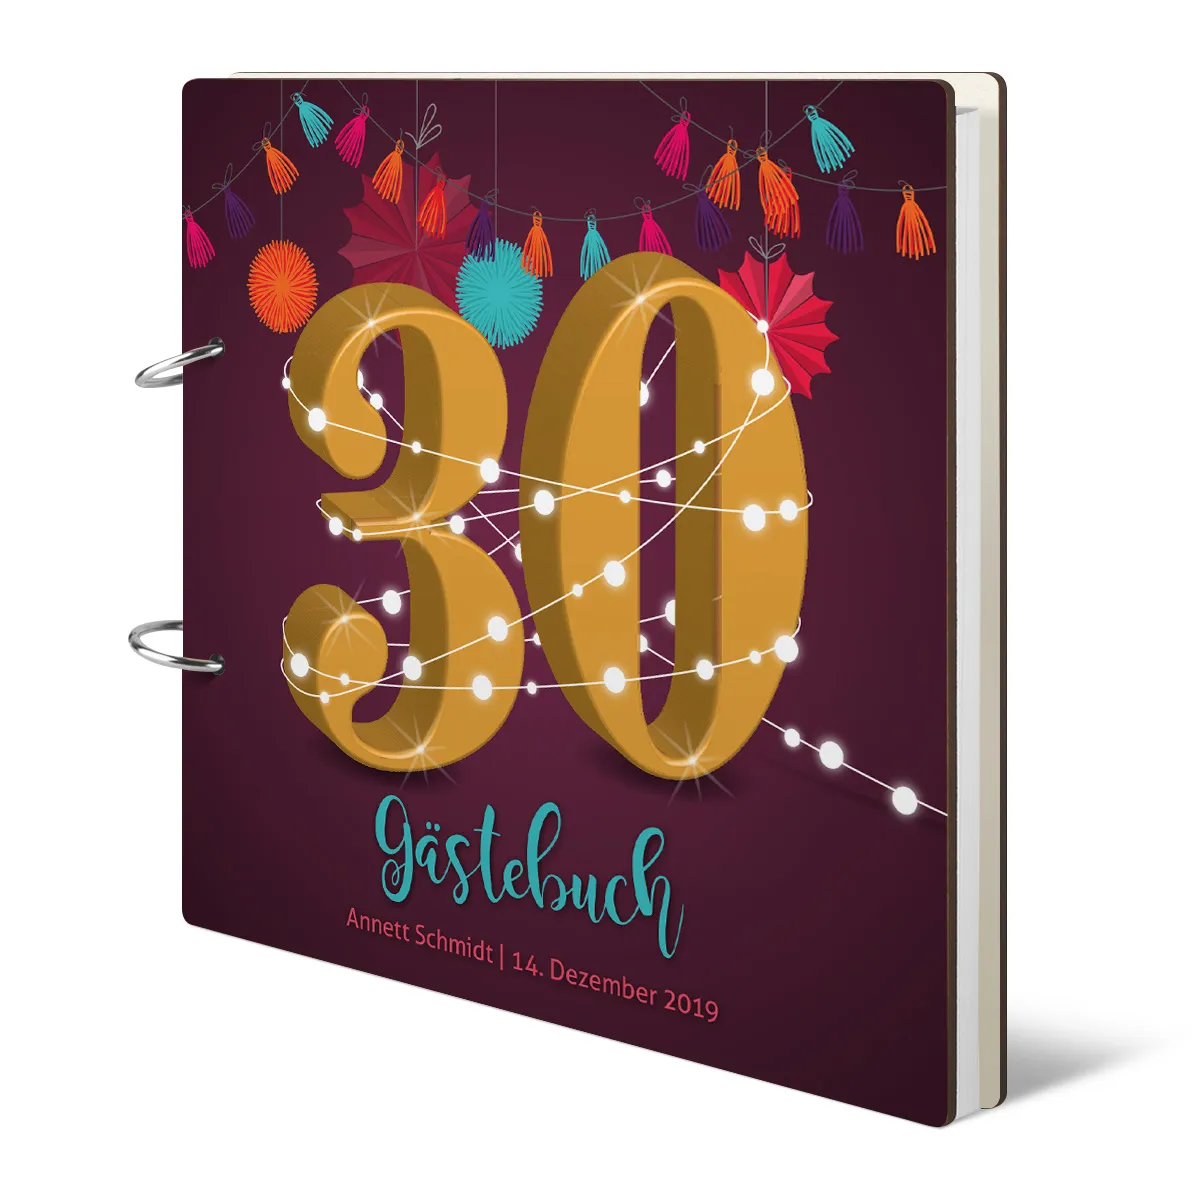 Personalisiertes Geburtstag Gästebuch 30 Jahre - Girlande